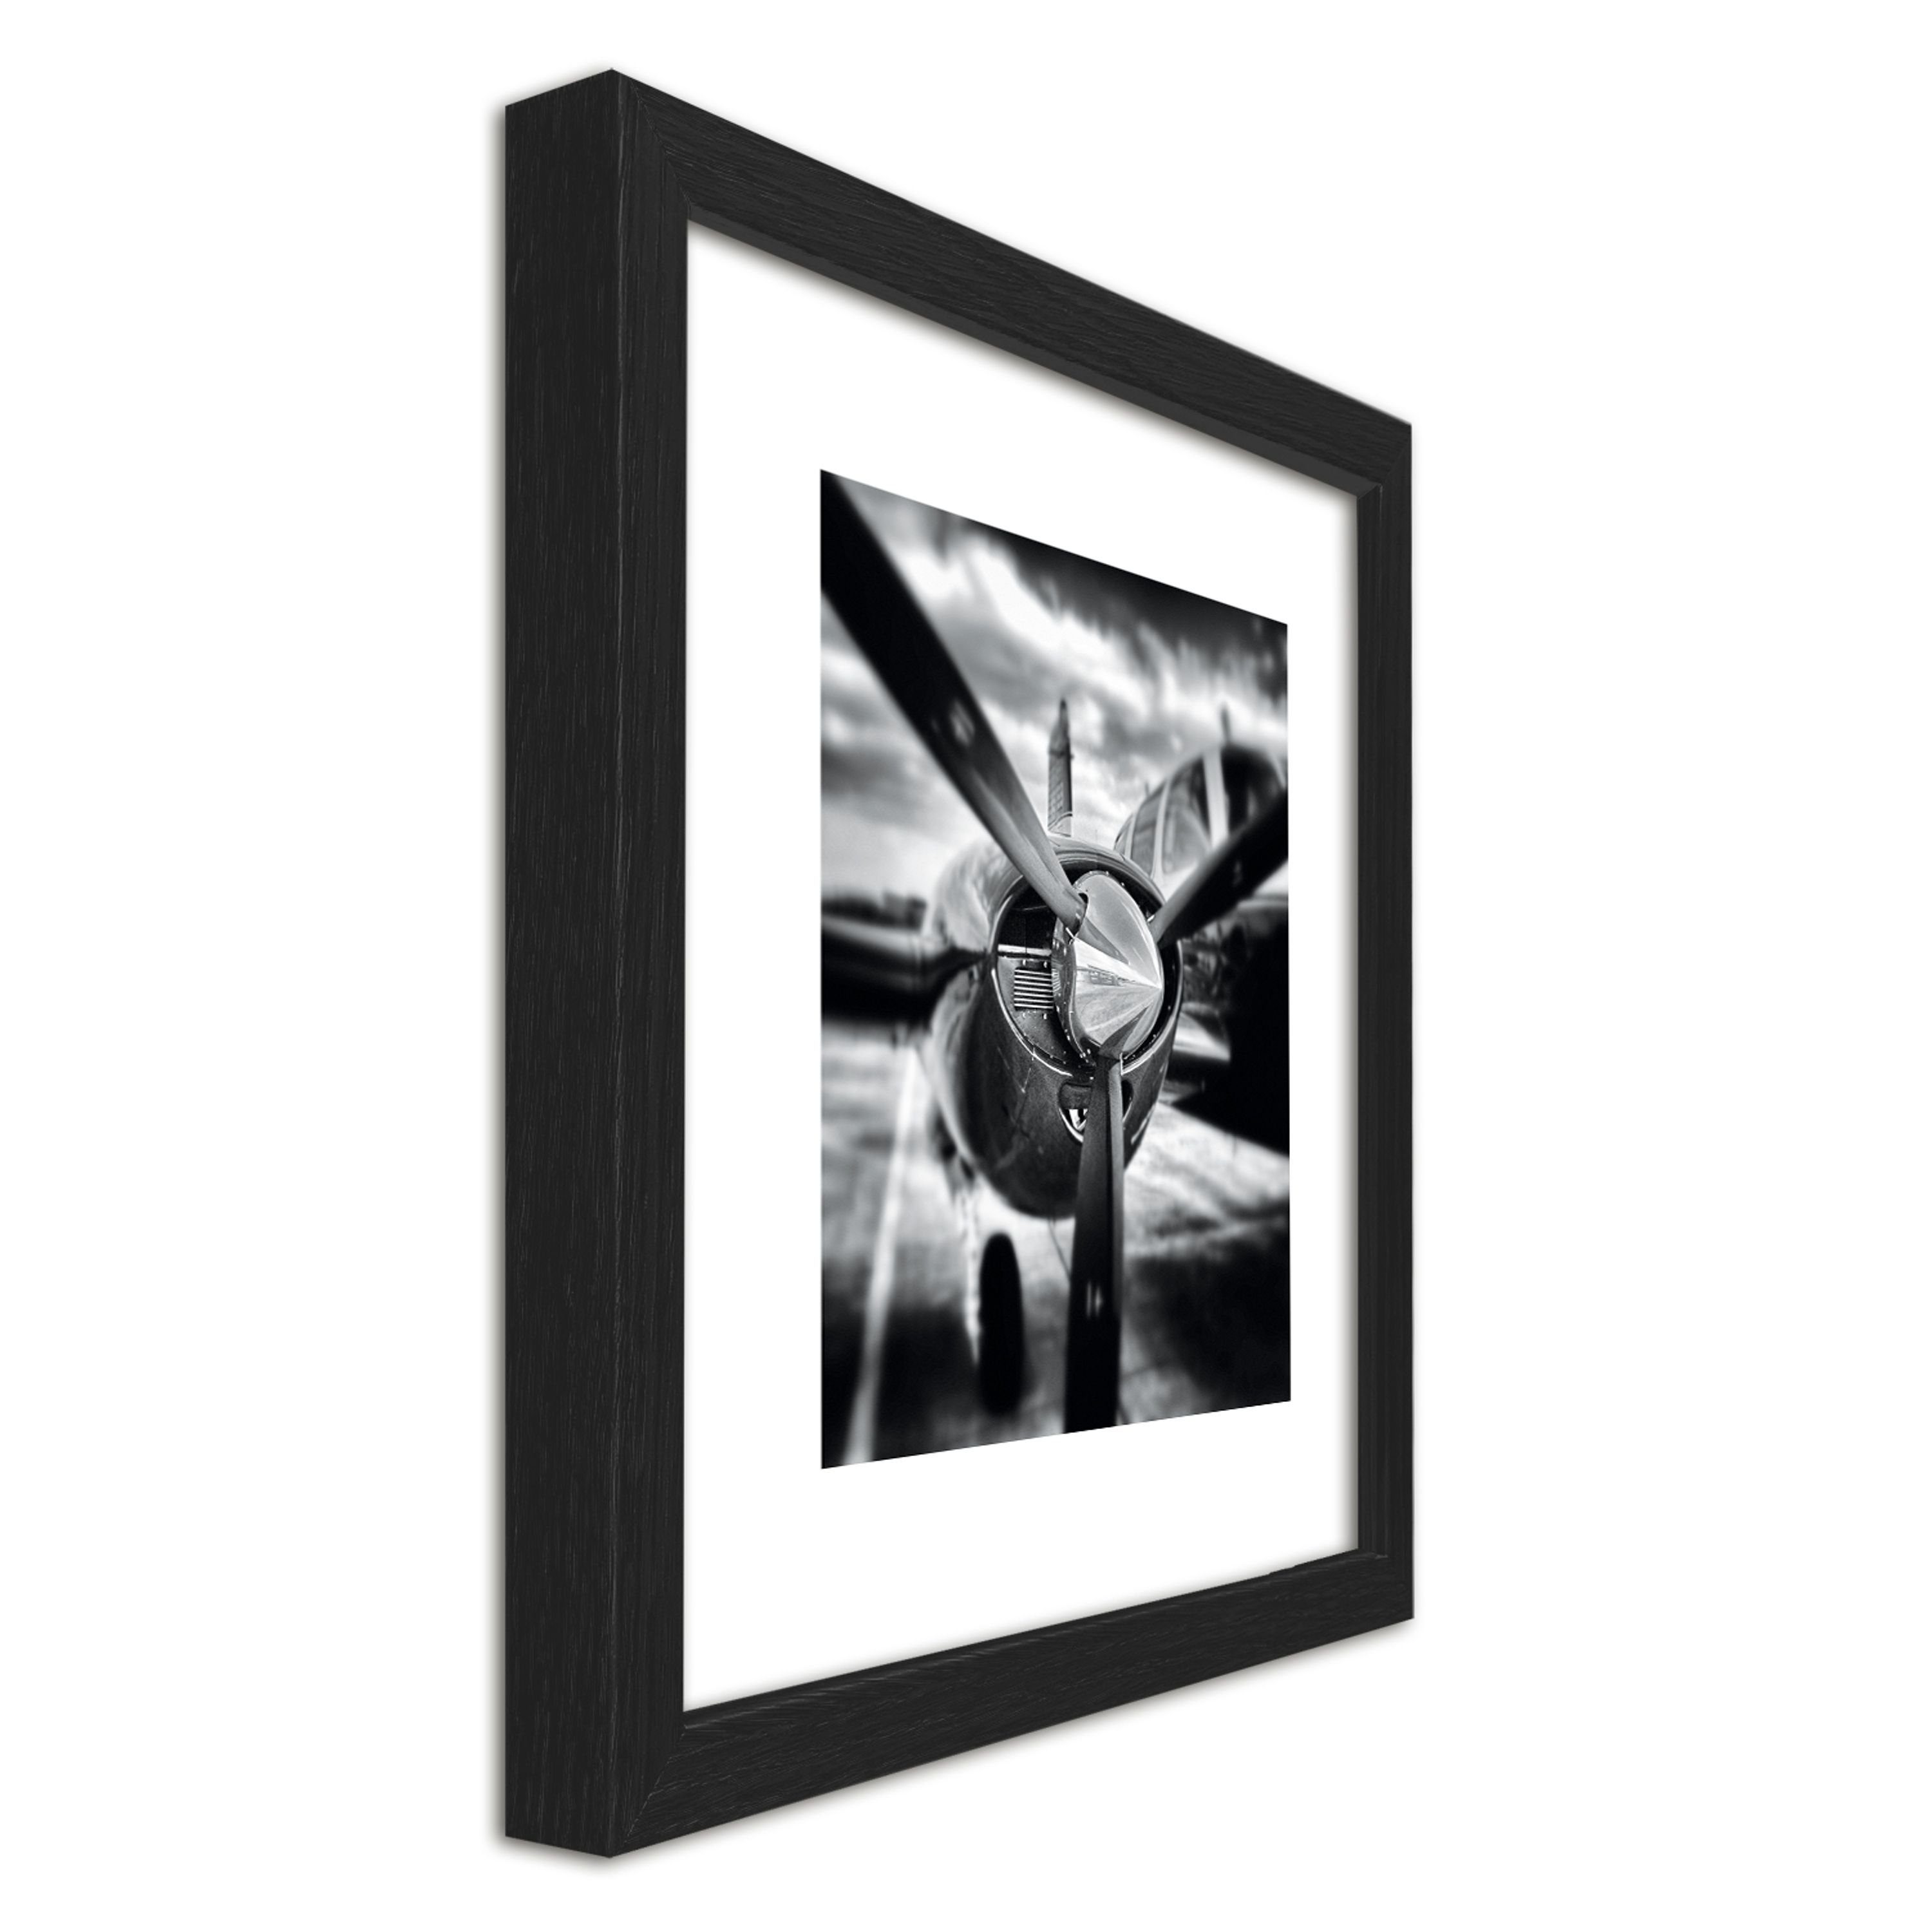 Bild Bild Holz-Rahmen / 30x30cm inkl. gerahmt Wandbild, Zeichnung: / mit II artissimo Flugzeuge Rahmen Design-Poster Schwarz-Weiß